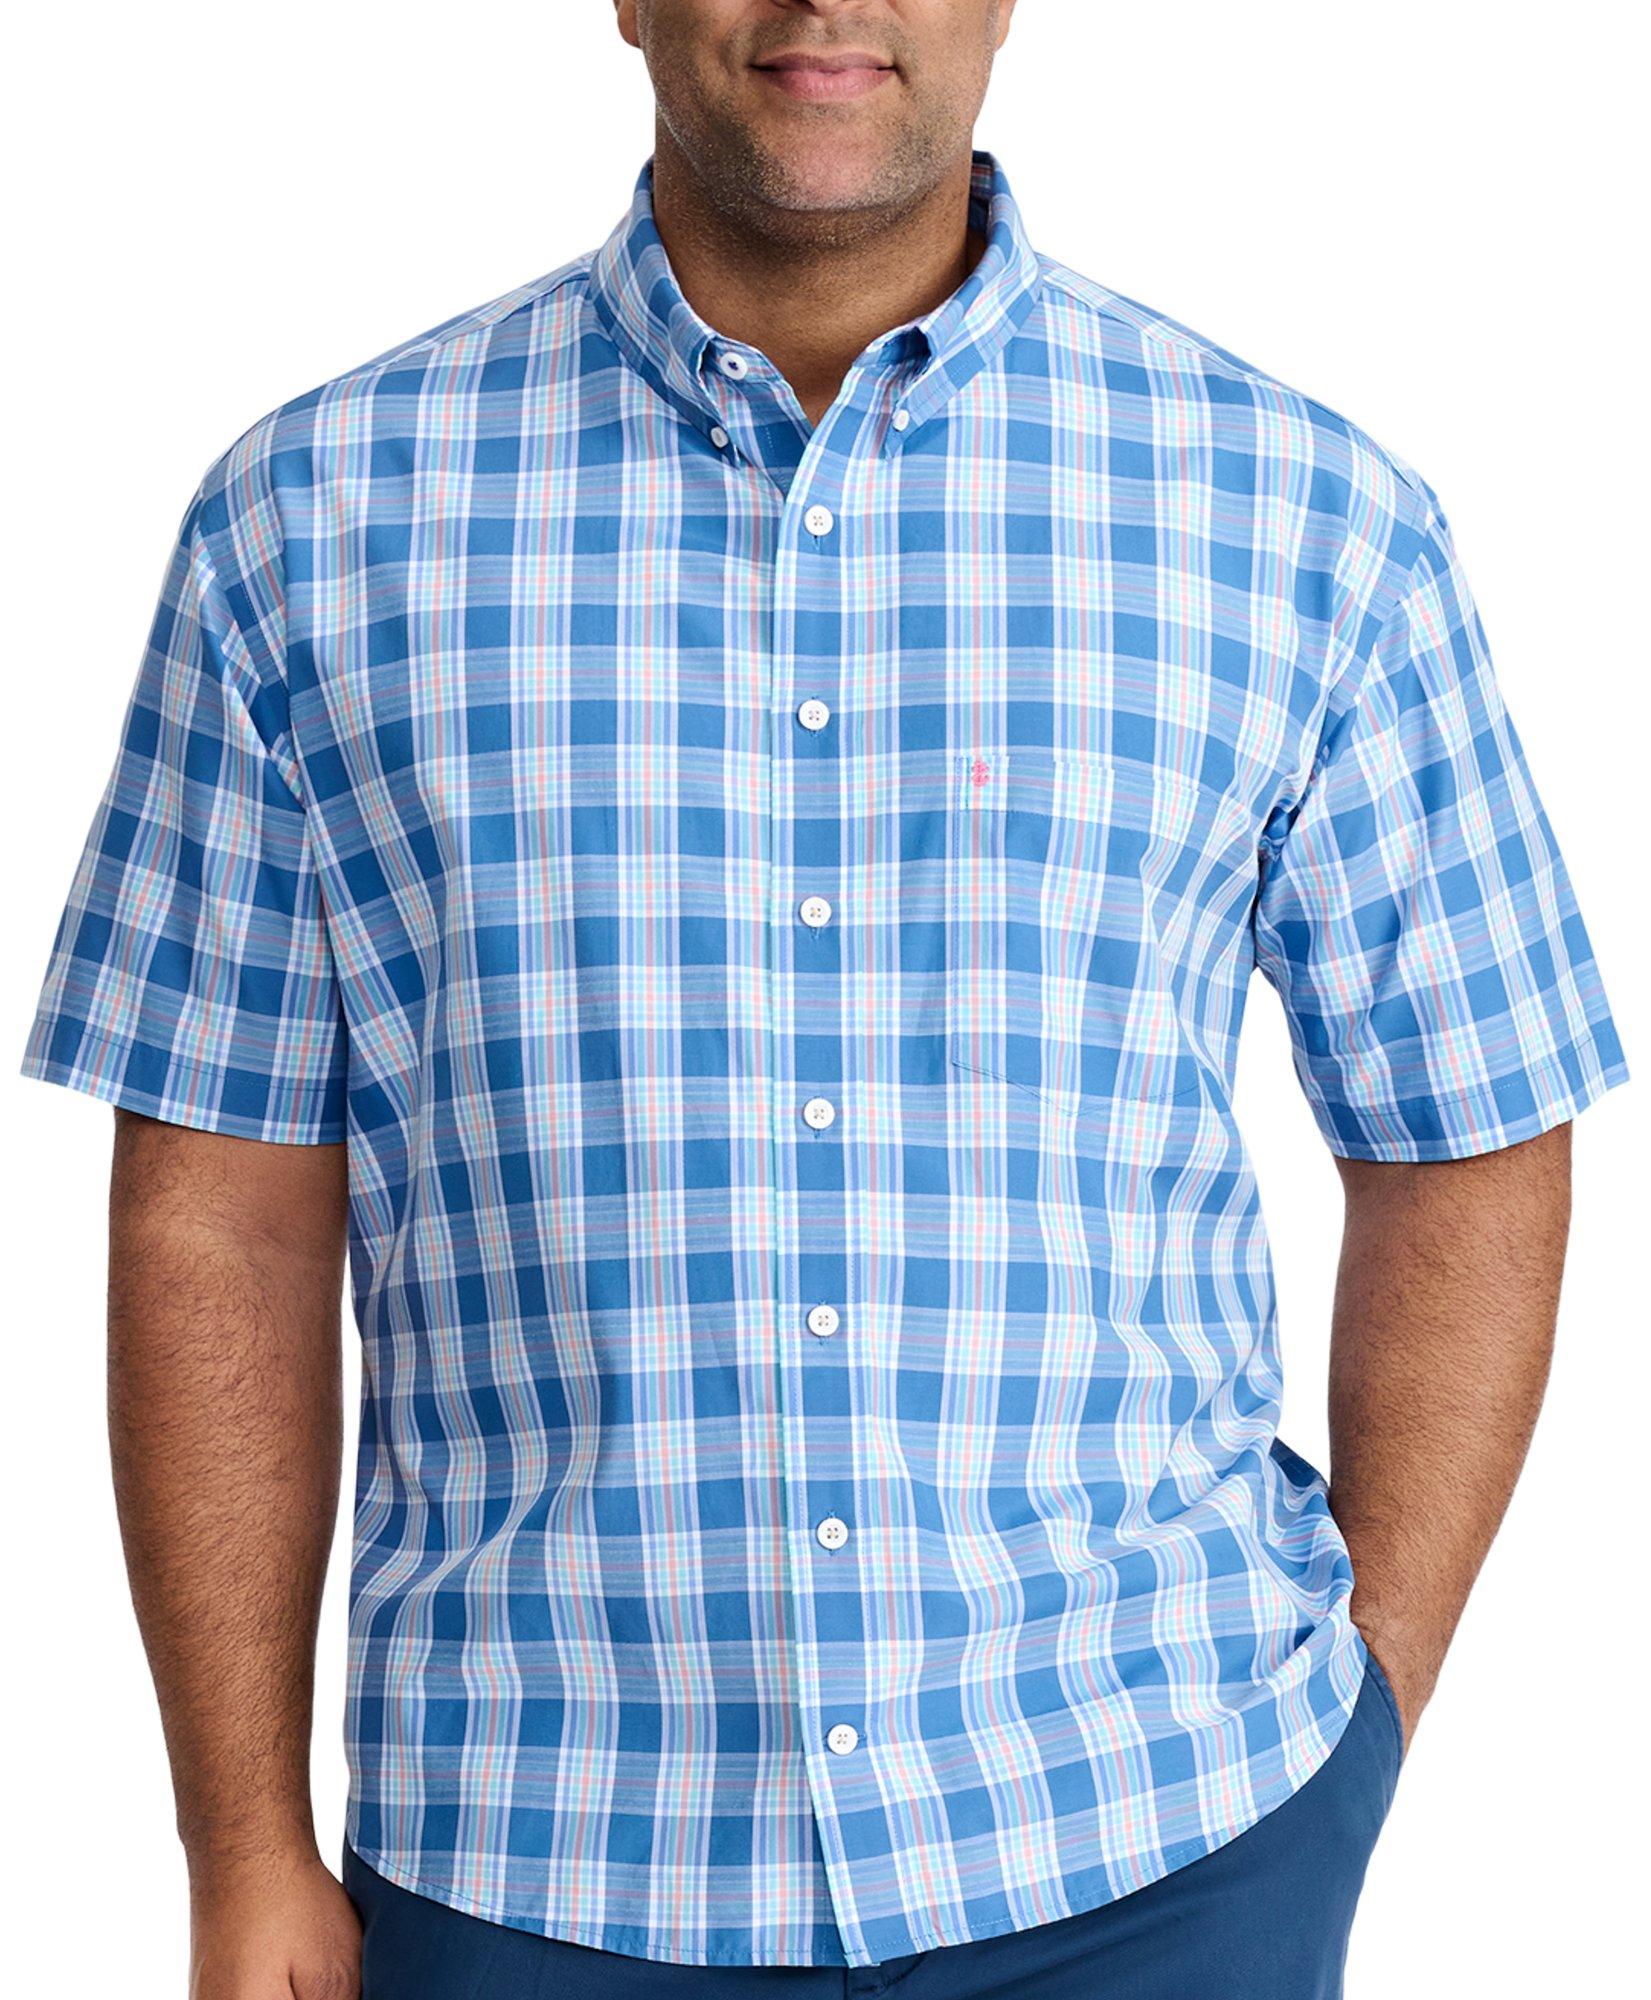 Mens Big & Tall Blue Woven Short Sleeve Shirt